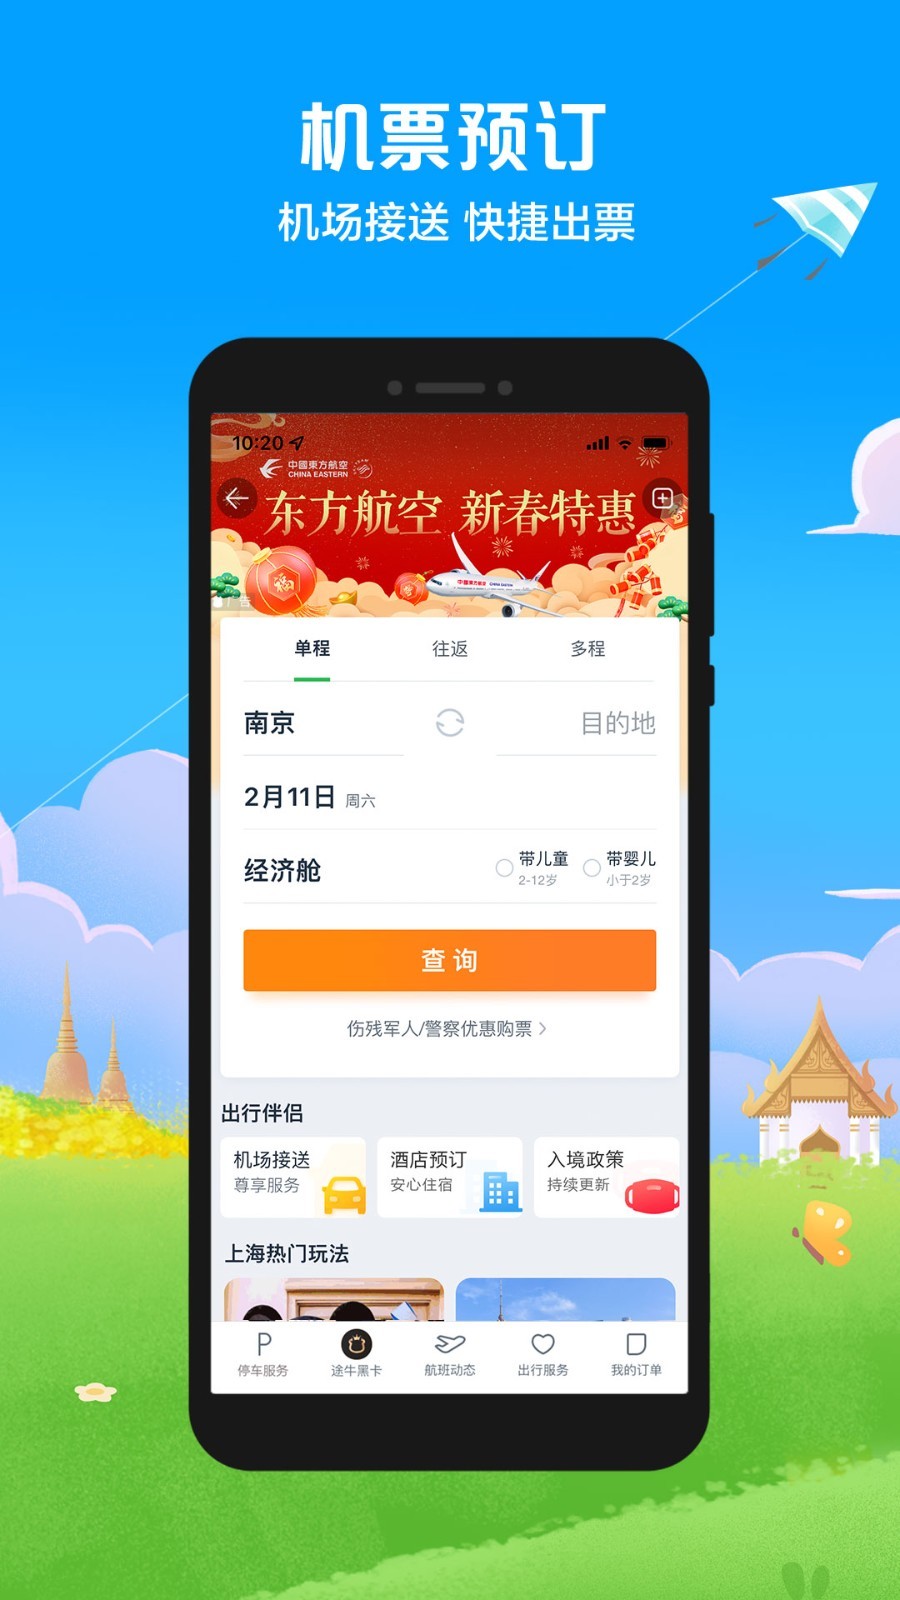 途牛旅游网跟团游app